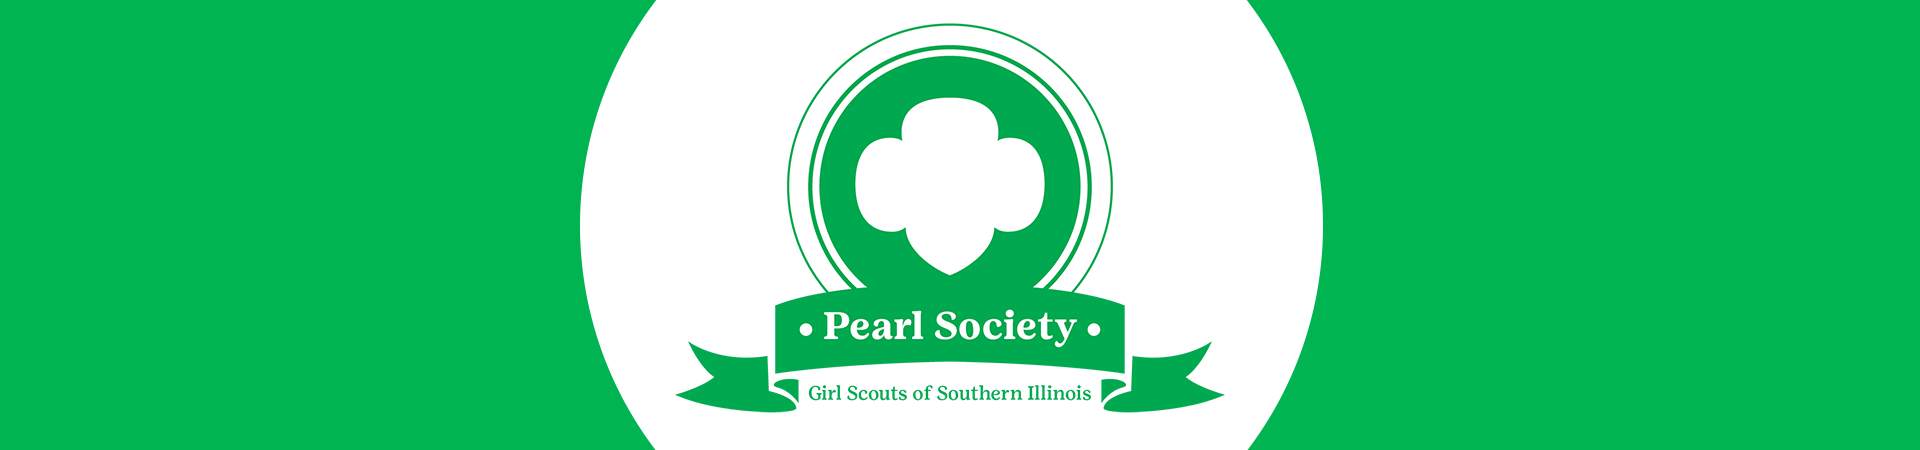  pearl society logo 